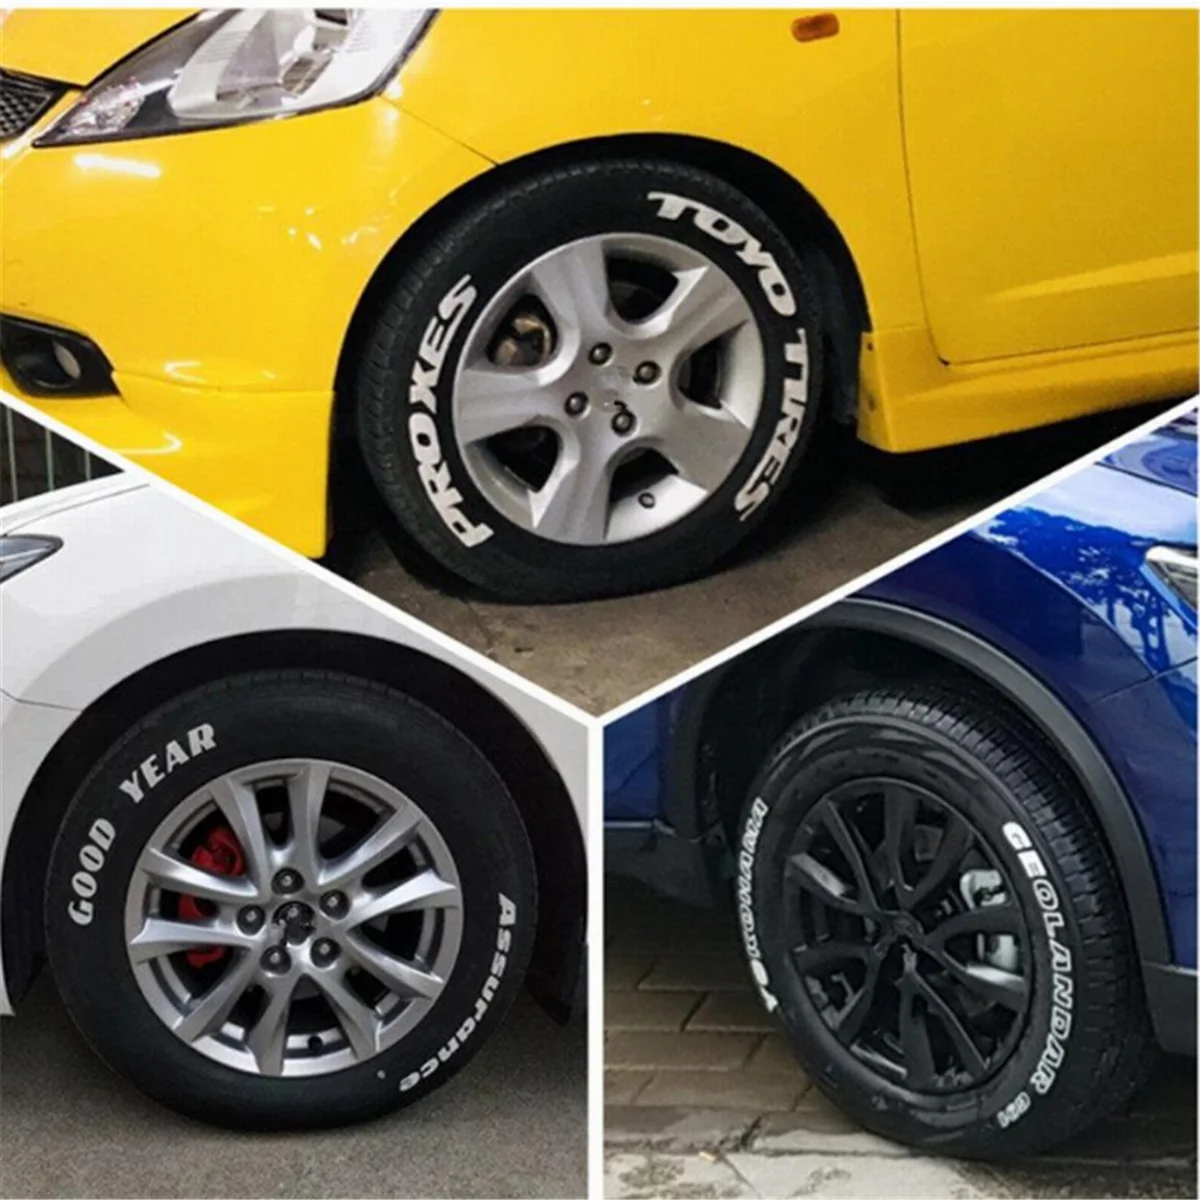 4Pcs Waterproof White Car Paint Pen Car Parts Tyre Tire Wheel